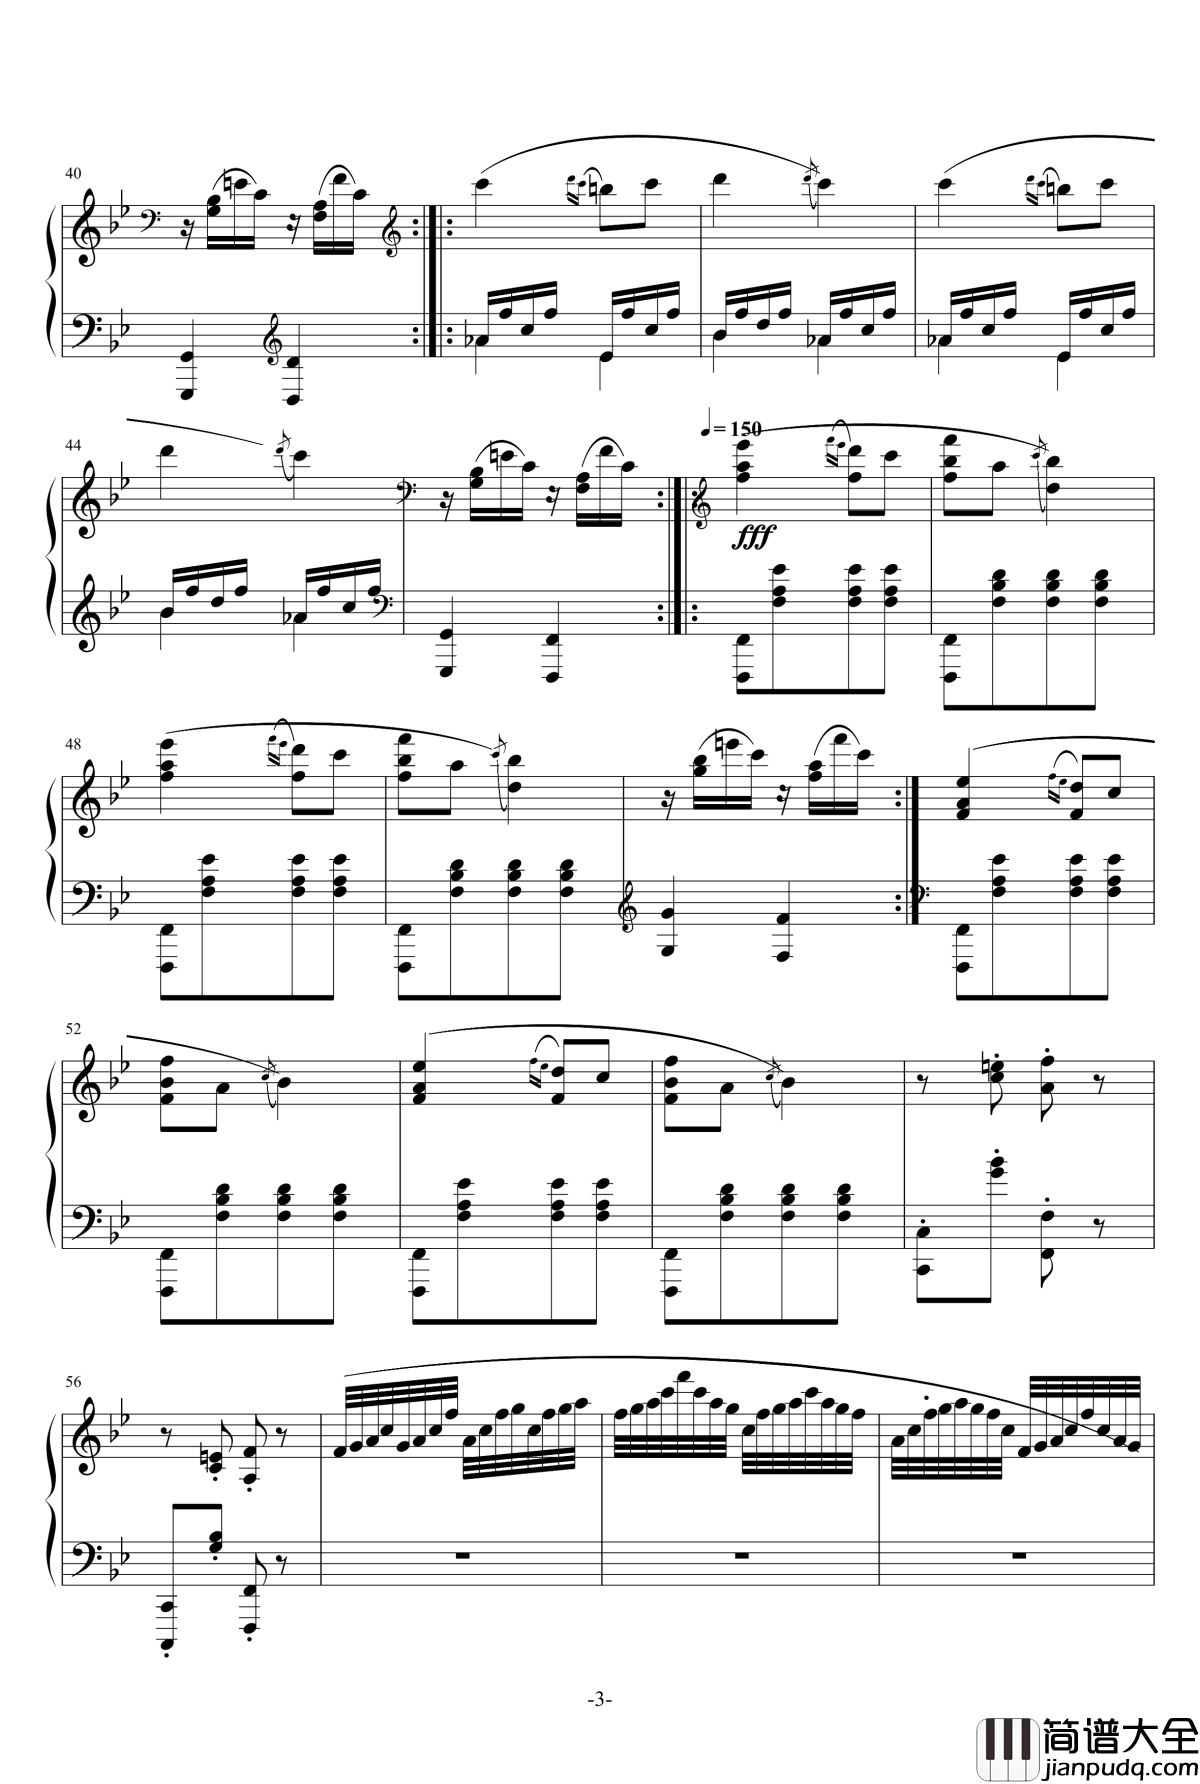 小温狂想曲_3钢琴谱—具有匈牙利狂想曲风格的一曲。—我的代表作_一个球